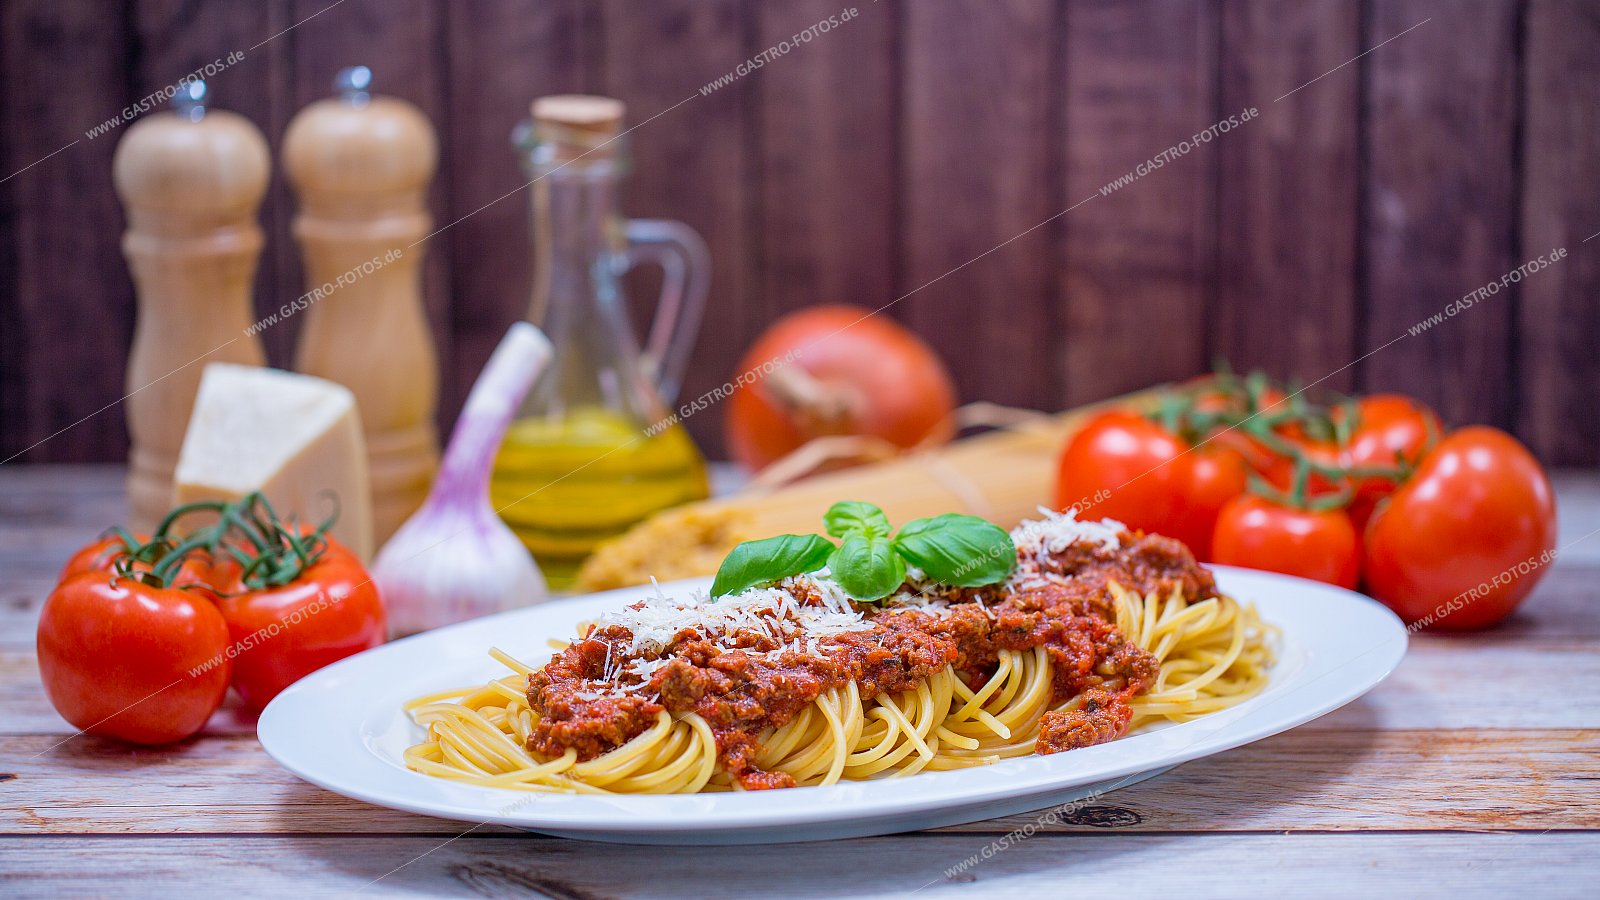 Spaghetti mit Hackfleischsauce - Nudelgerichte mit Fleisch